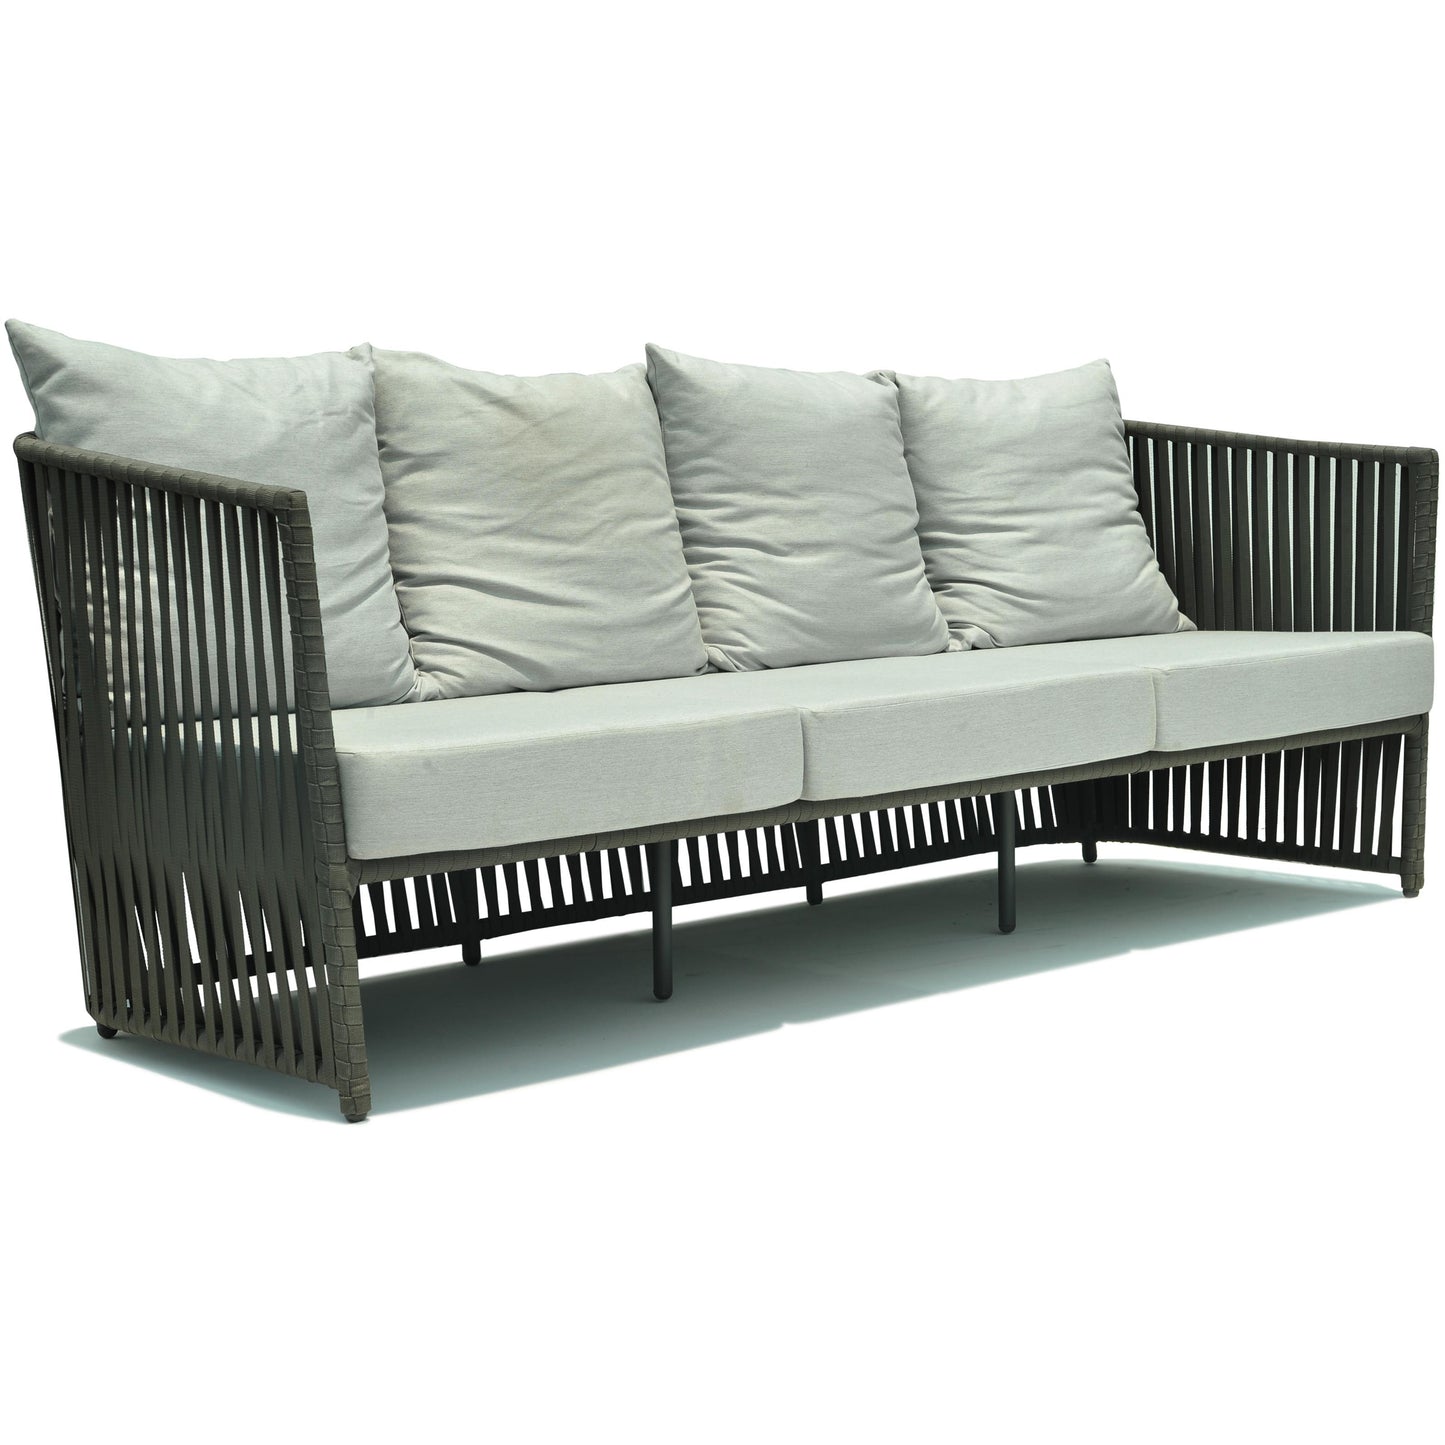 Milano Sofa - PadioLiving - Milano Sofa - Outdoor Sofa - Dark Grey 21mm Strap - Panama Cloud (£2279) - PadioLiving